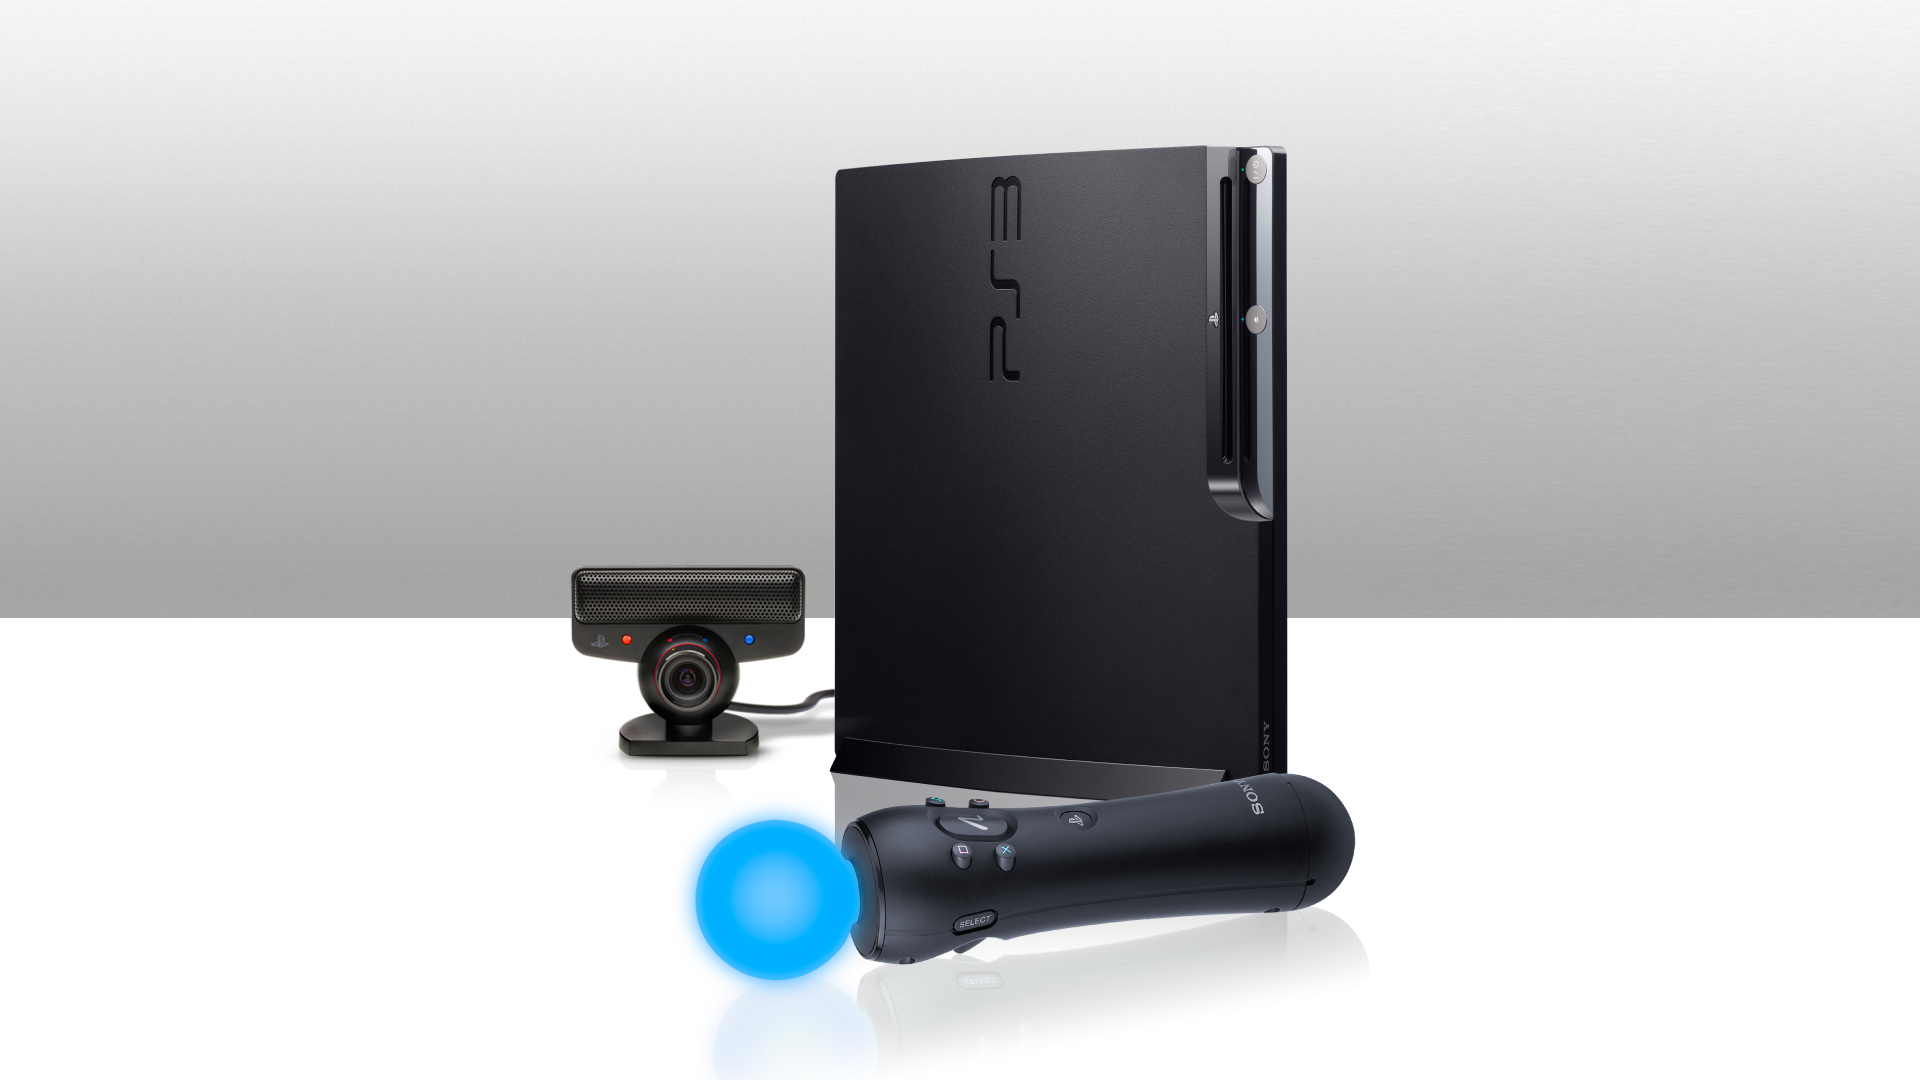 O que é Liquid Metal, usado no PlayStation 5? – Tecnoblog